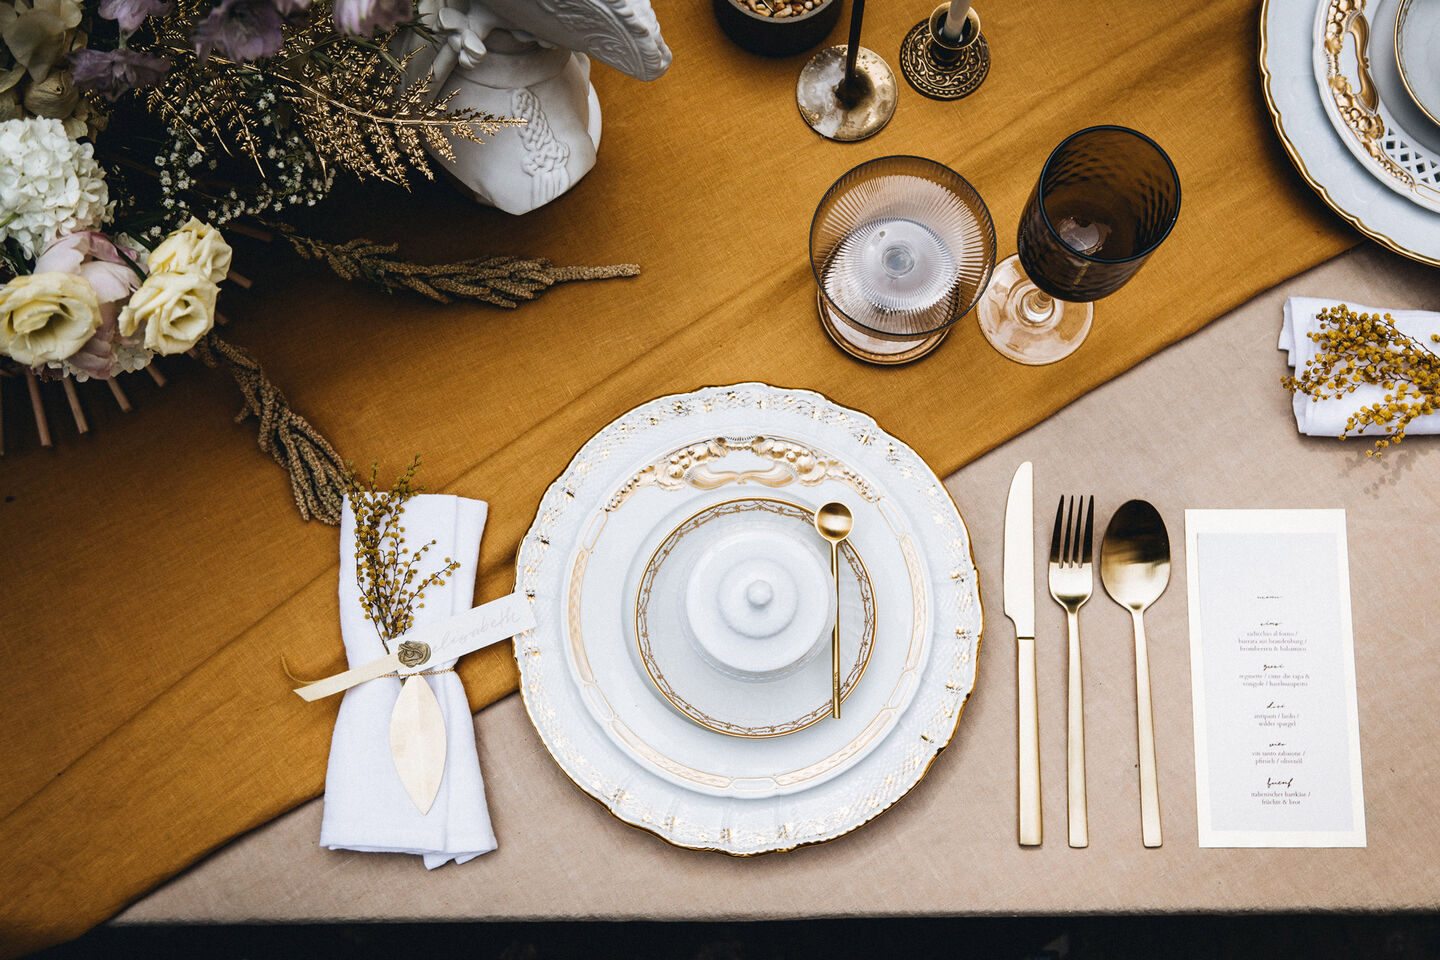 Fertiges Gedeck mit Tellern, Besteck und Gläsern auf dem Tisch von oben aufgenommen